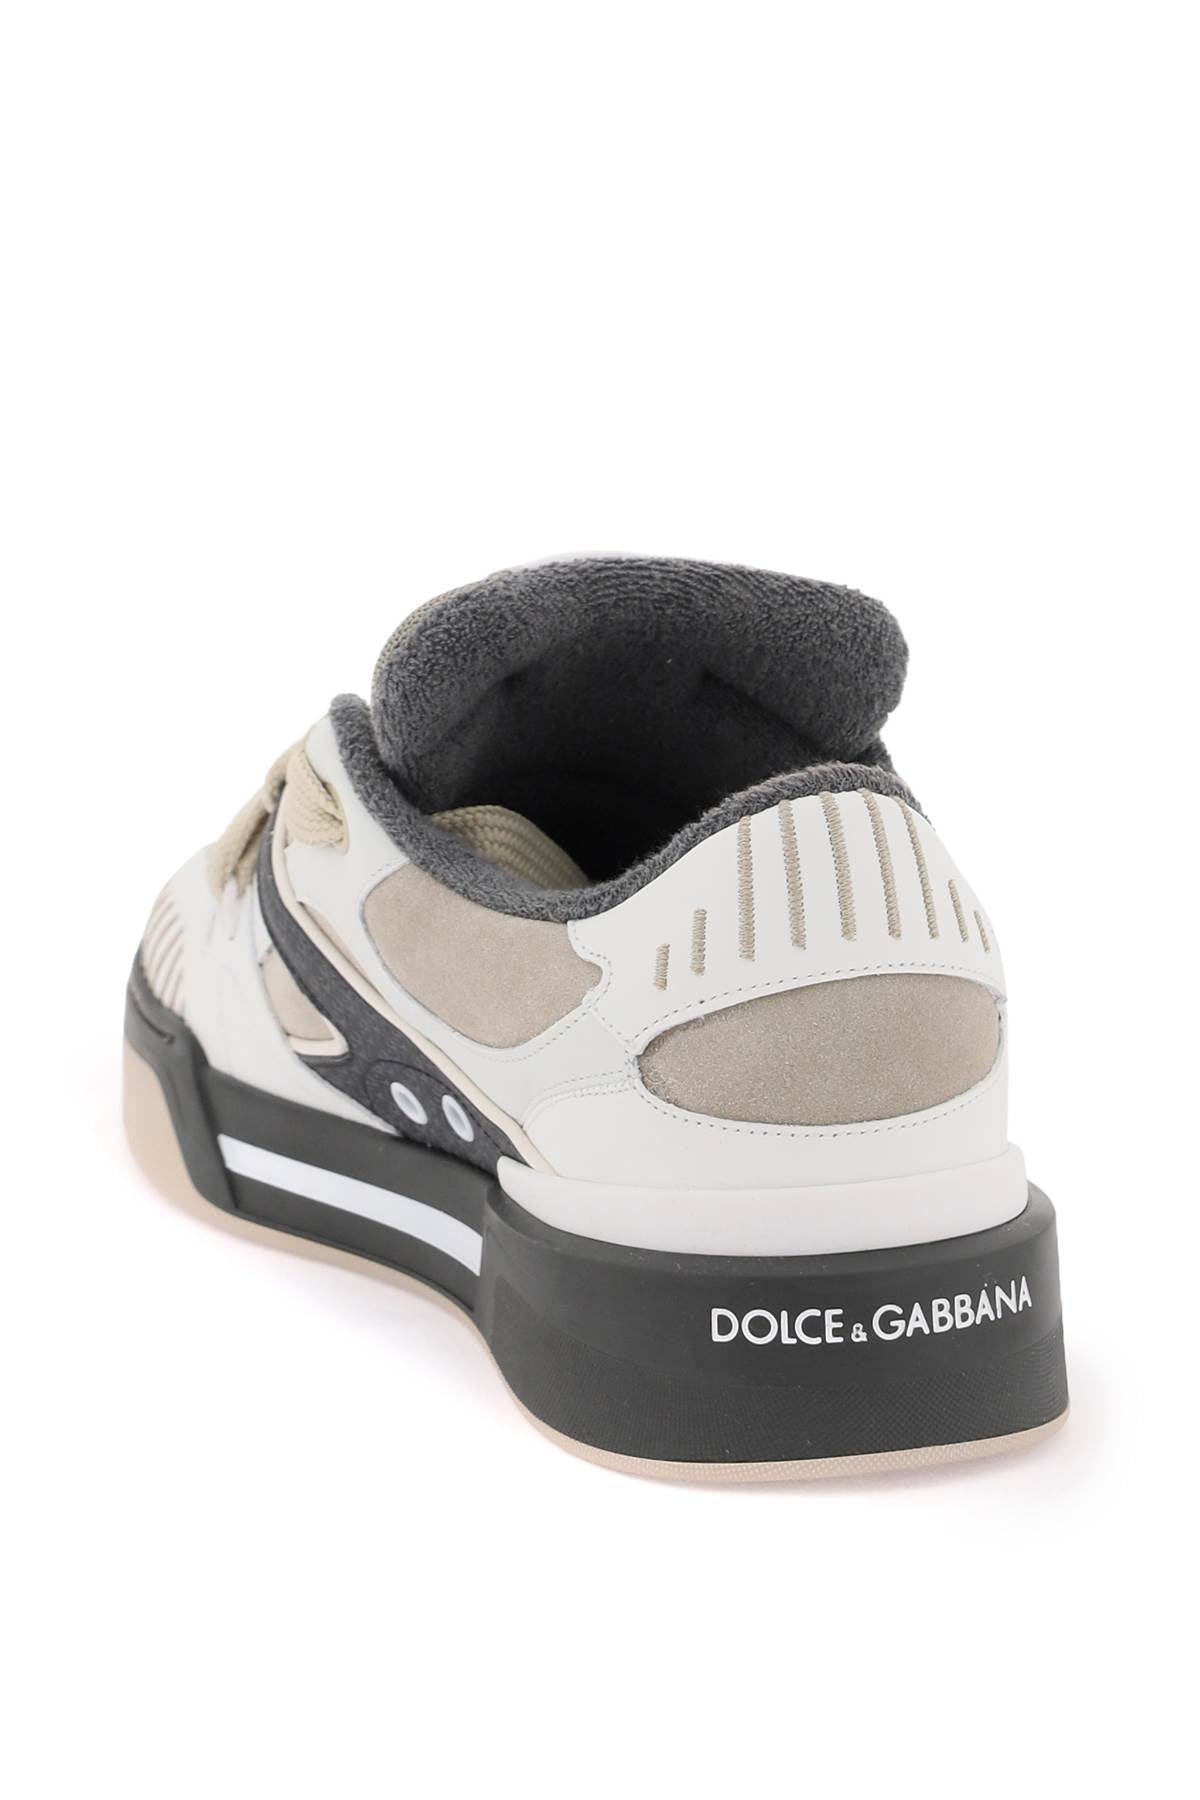 Dolce & Gabbana 'NEW ROMA' SNEAKERS CS2211AO482HKXBK